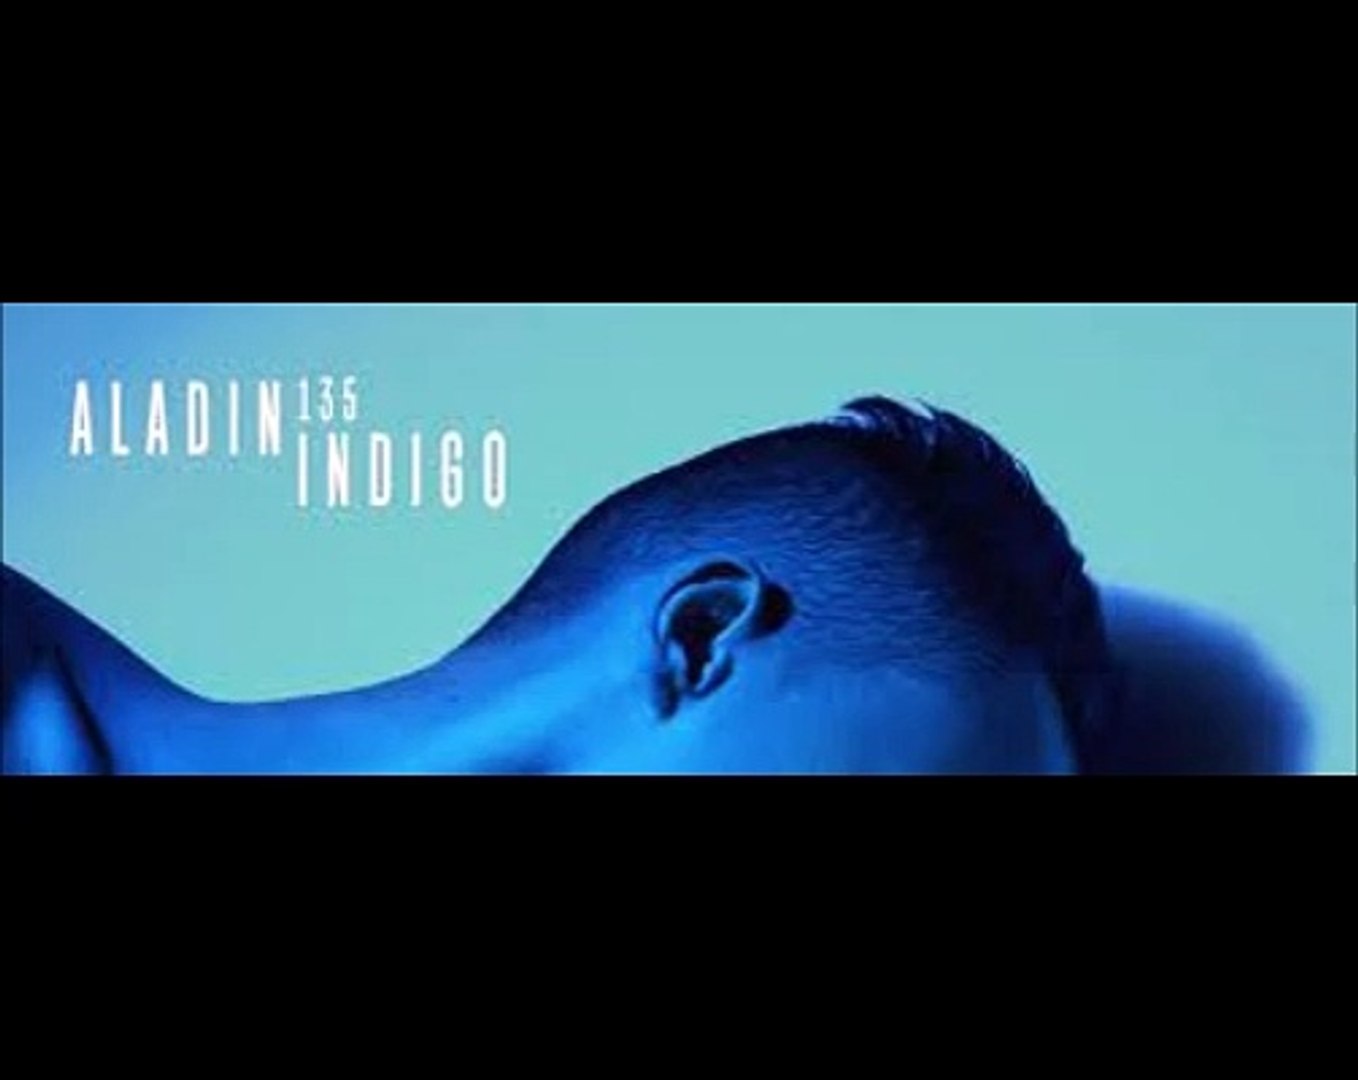 Aladin 135 - Hiver (feat. PLK & Lesram) __ Indigo (2017)